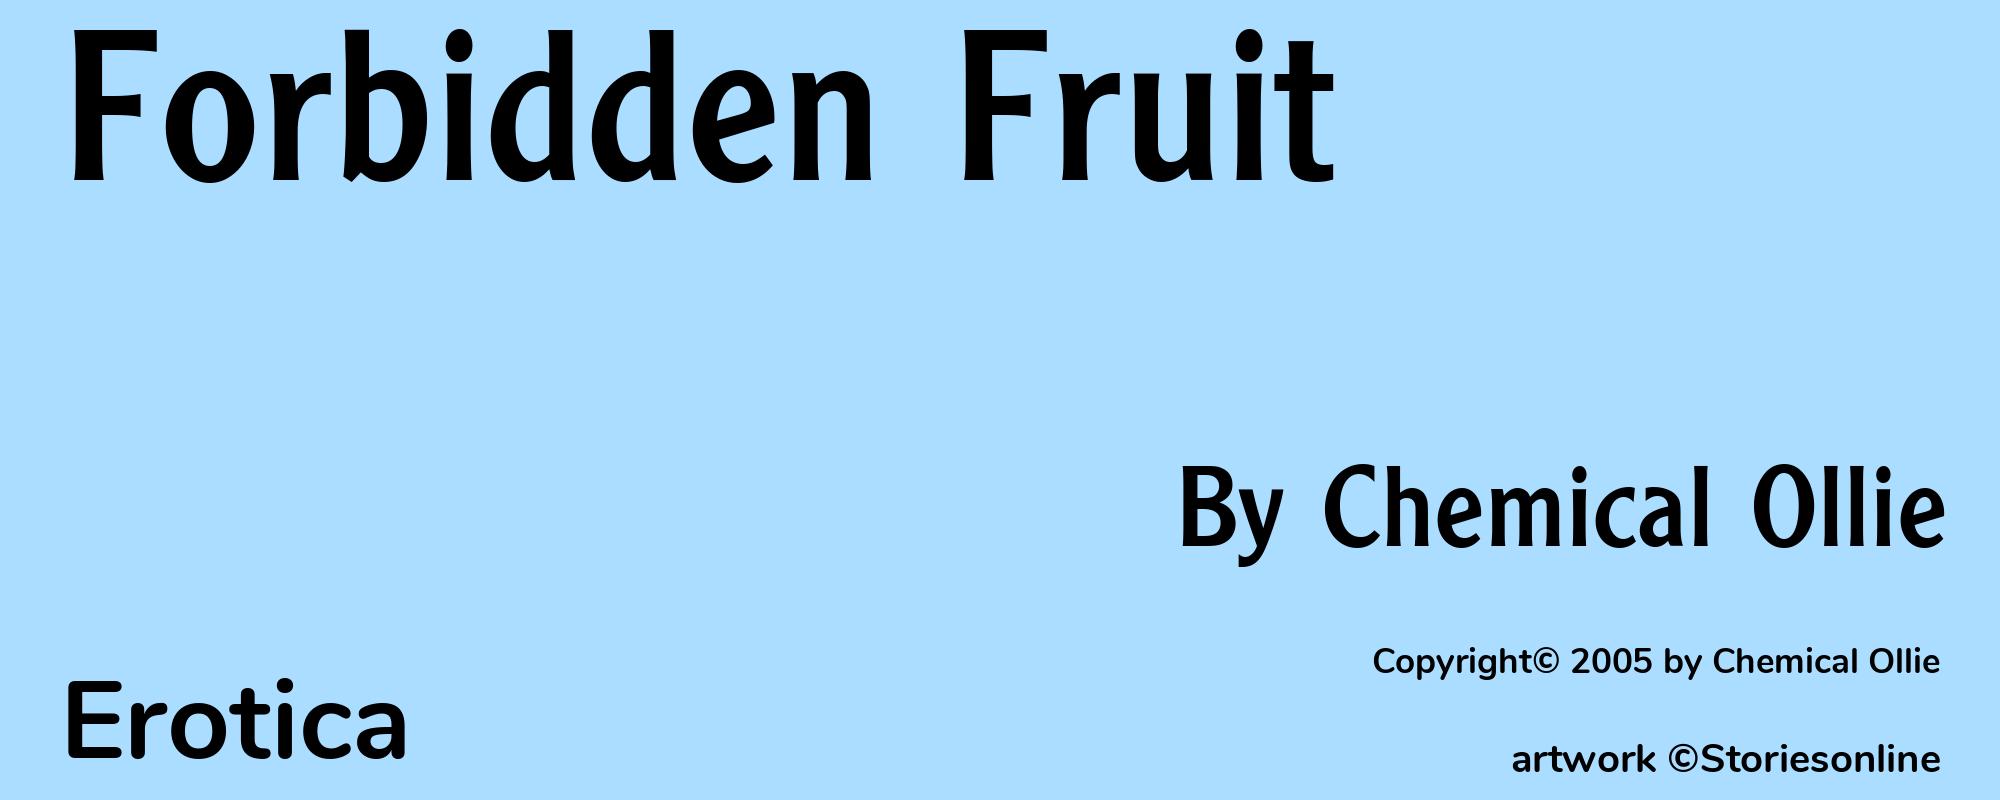 Forbidden Fruit - Cover